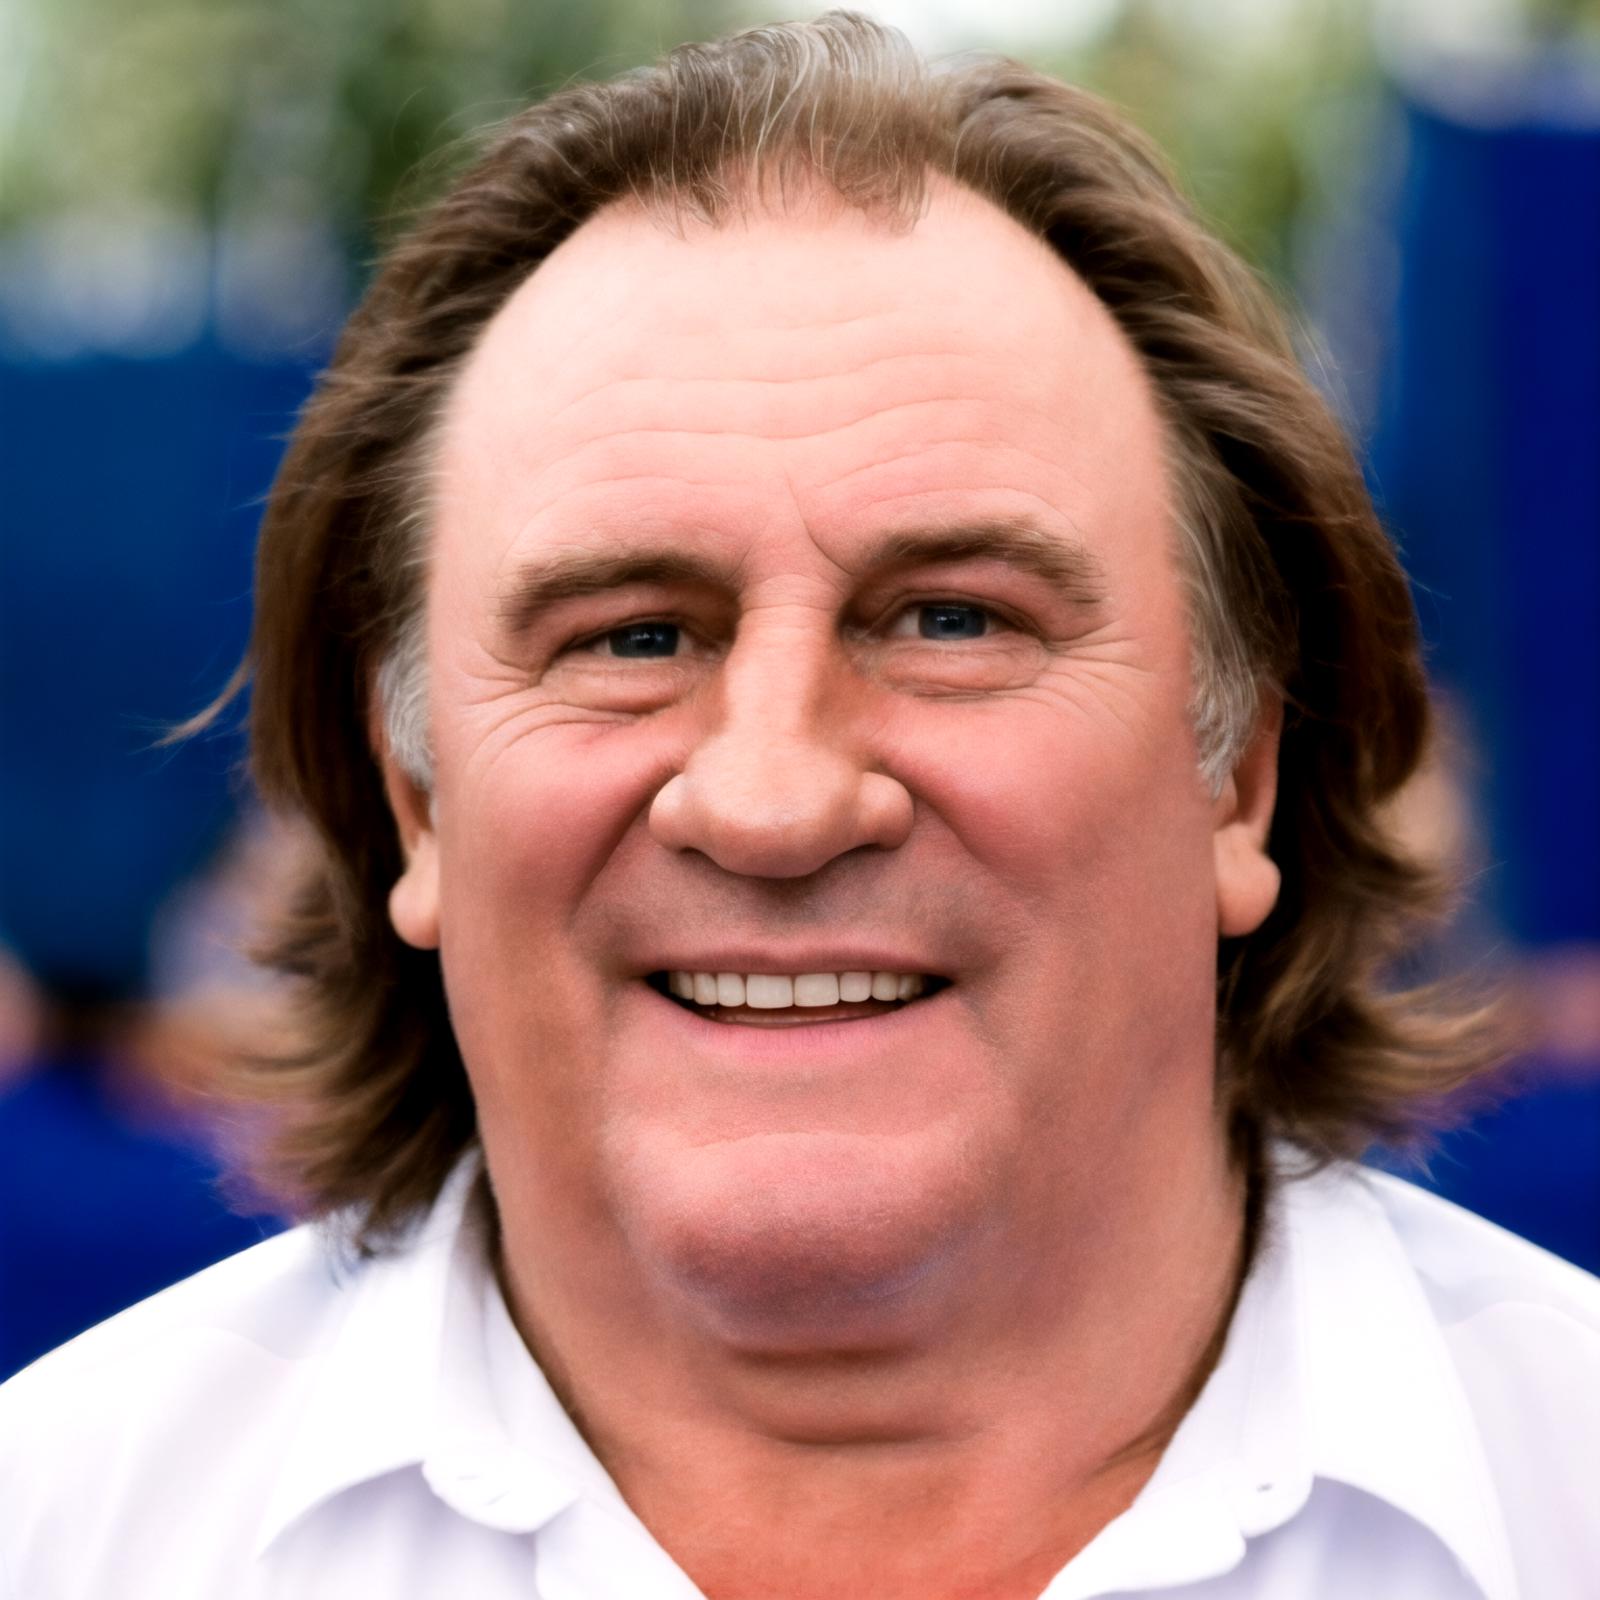 Gérard Depardieu image by Rejean